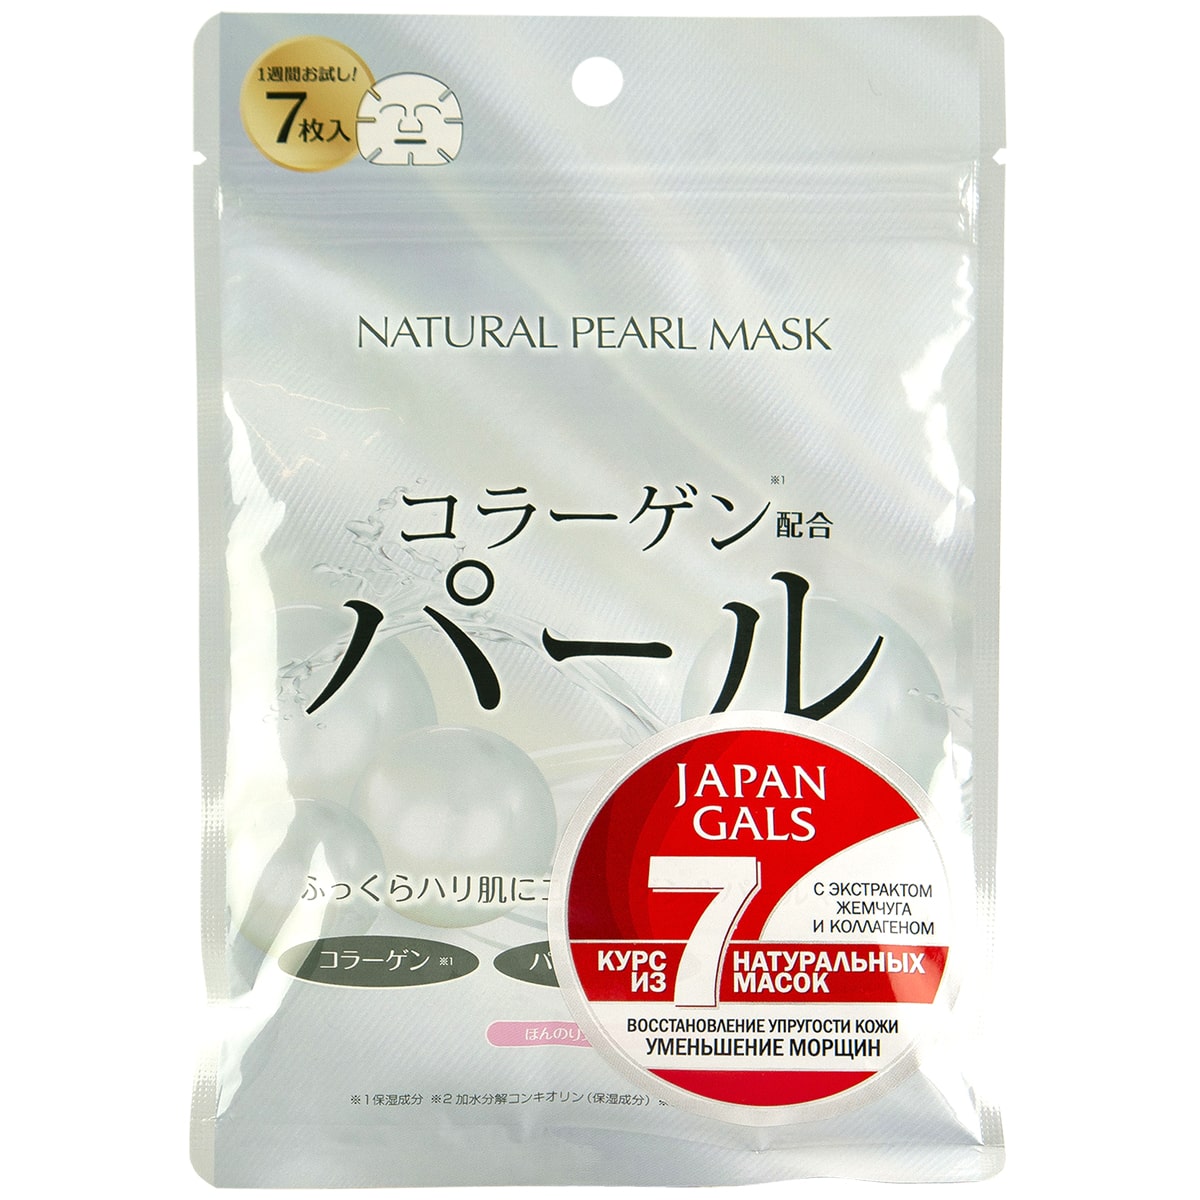 Japan Gals Курс натуральных масок для лица с экстрактом жемчуга, 7 шт (Japan Gals, )